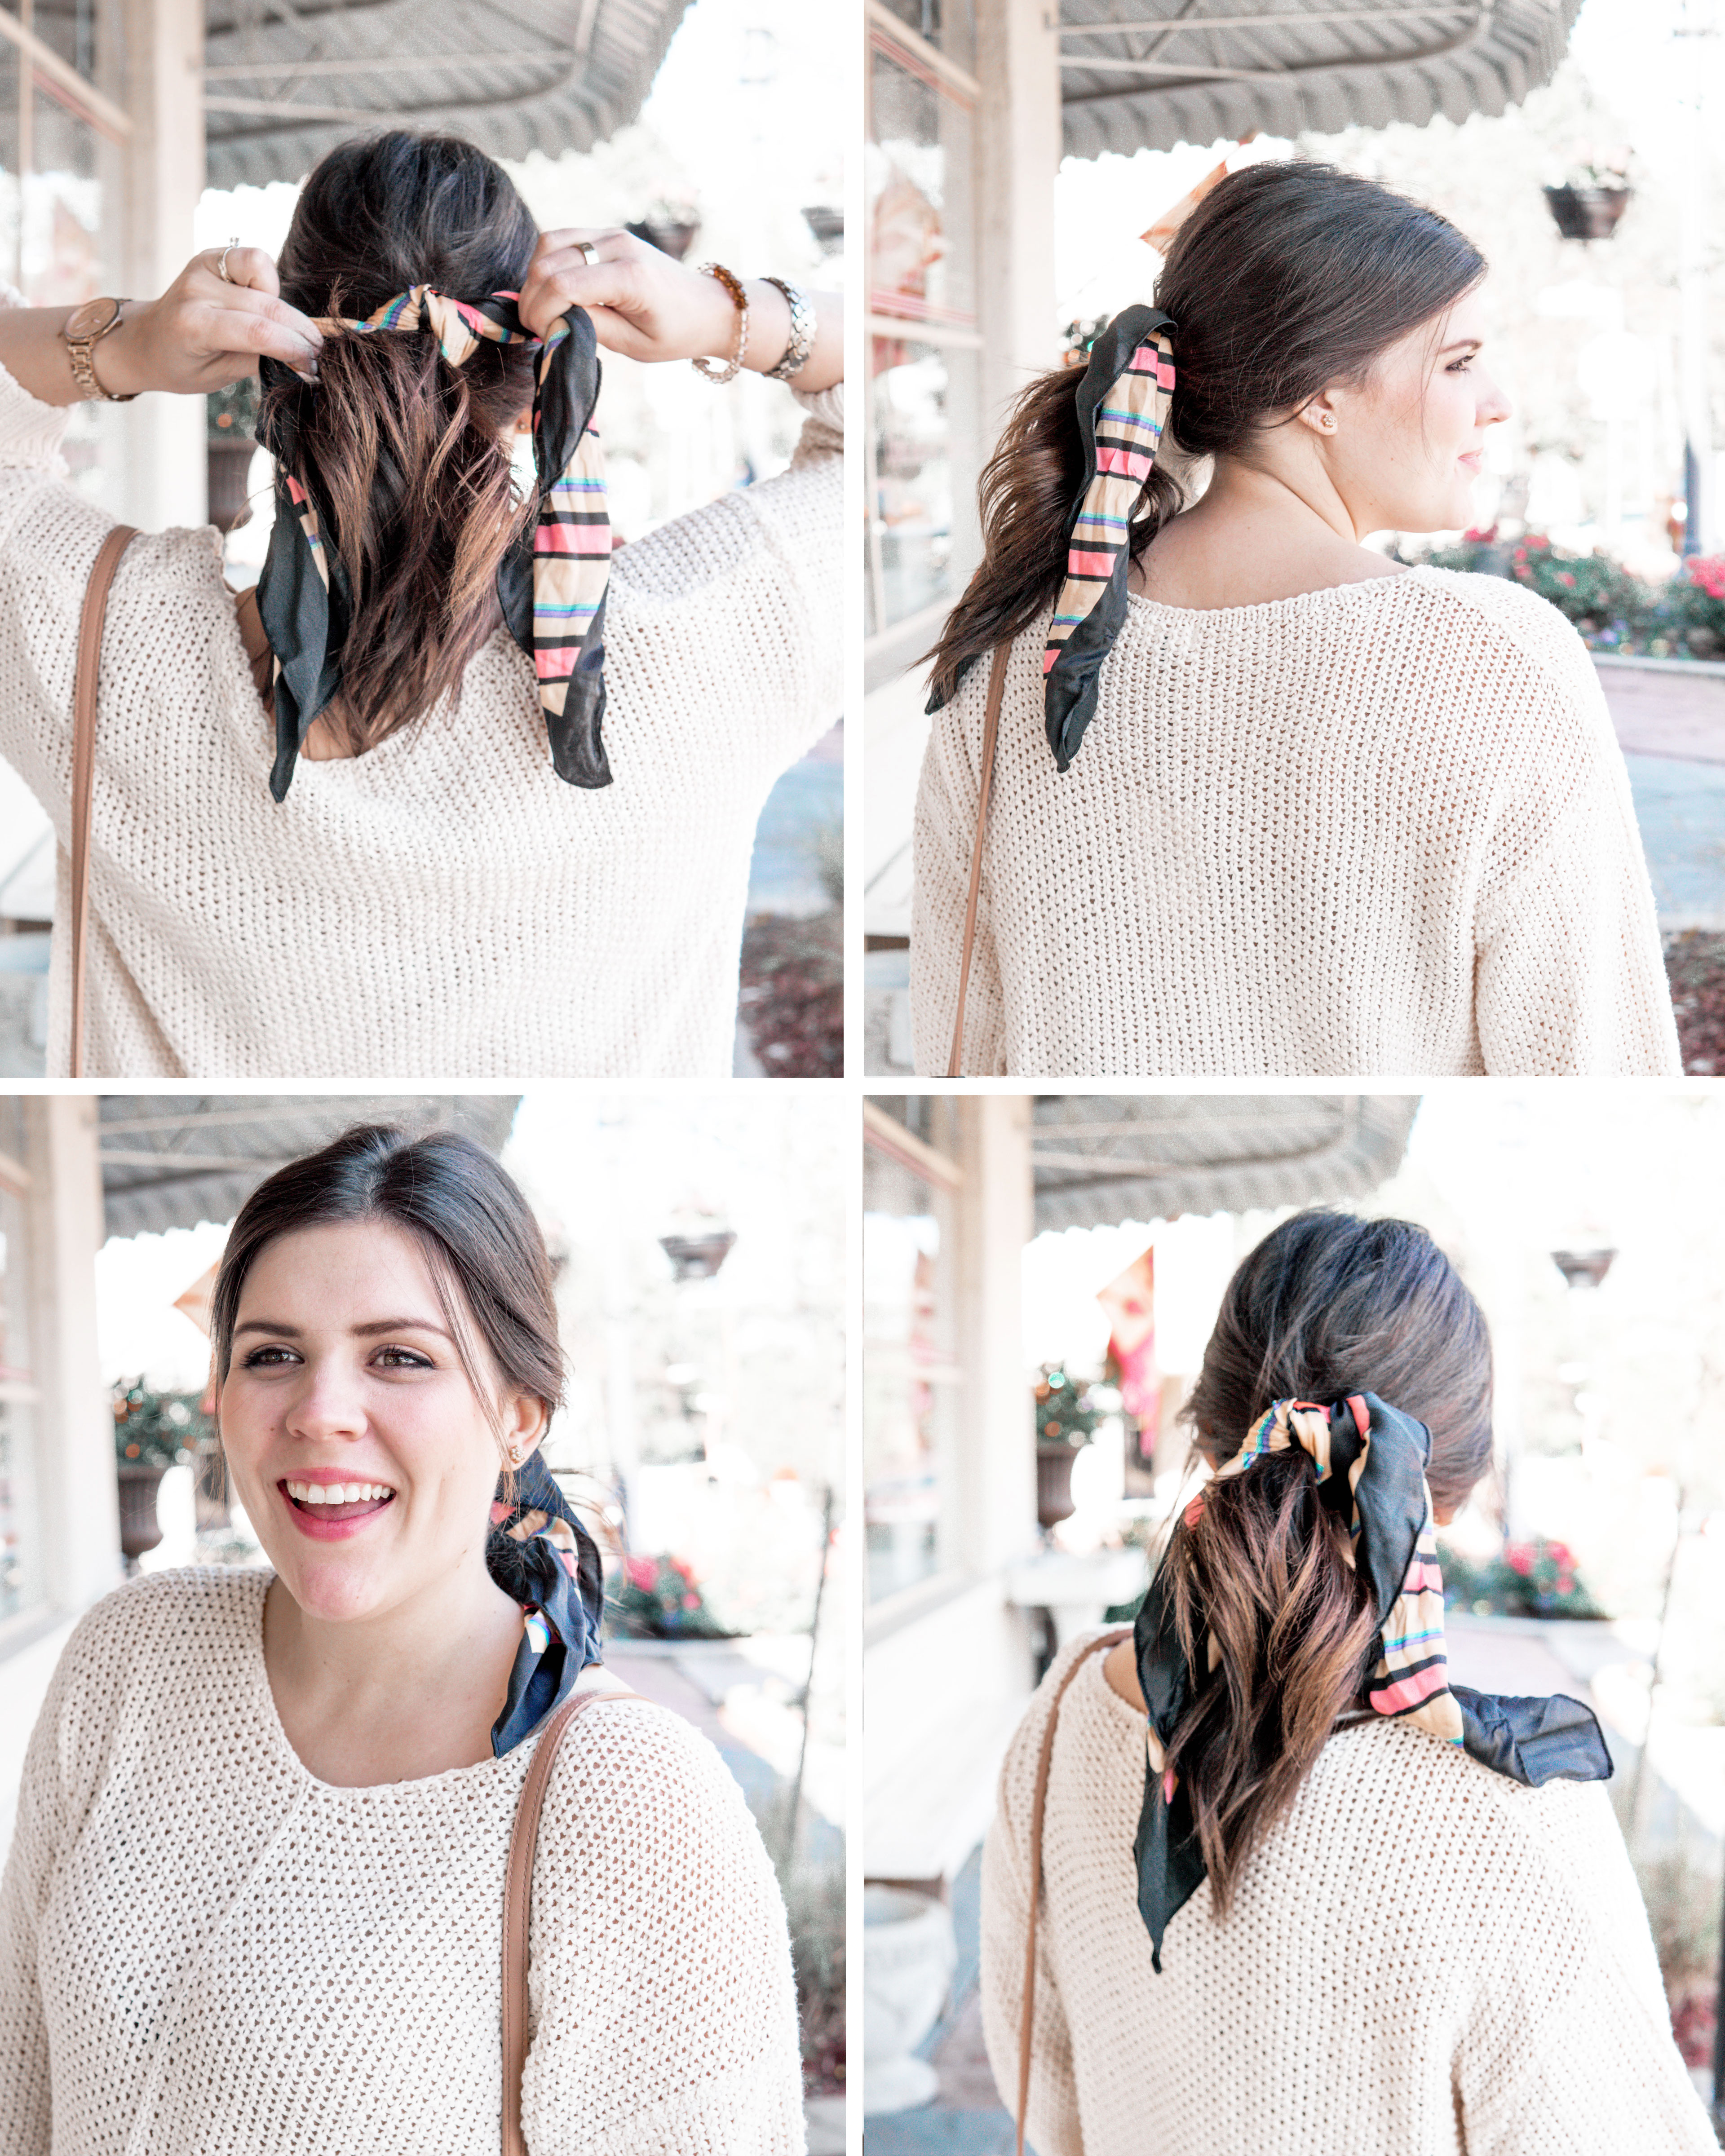 Louis Vuitton silk scarf hair hair accessories  Scarf hairstyles, Silk  scarf hair, Hair accessories